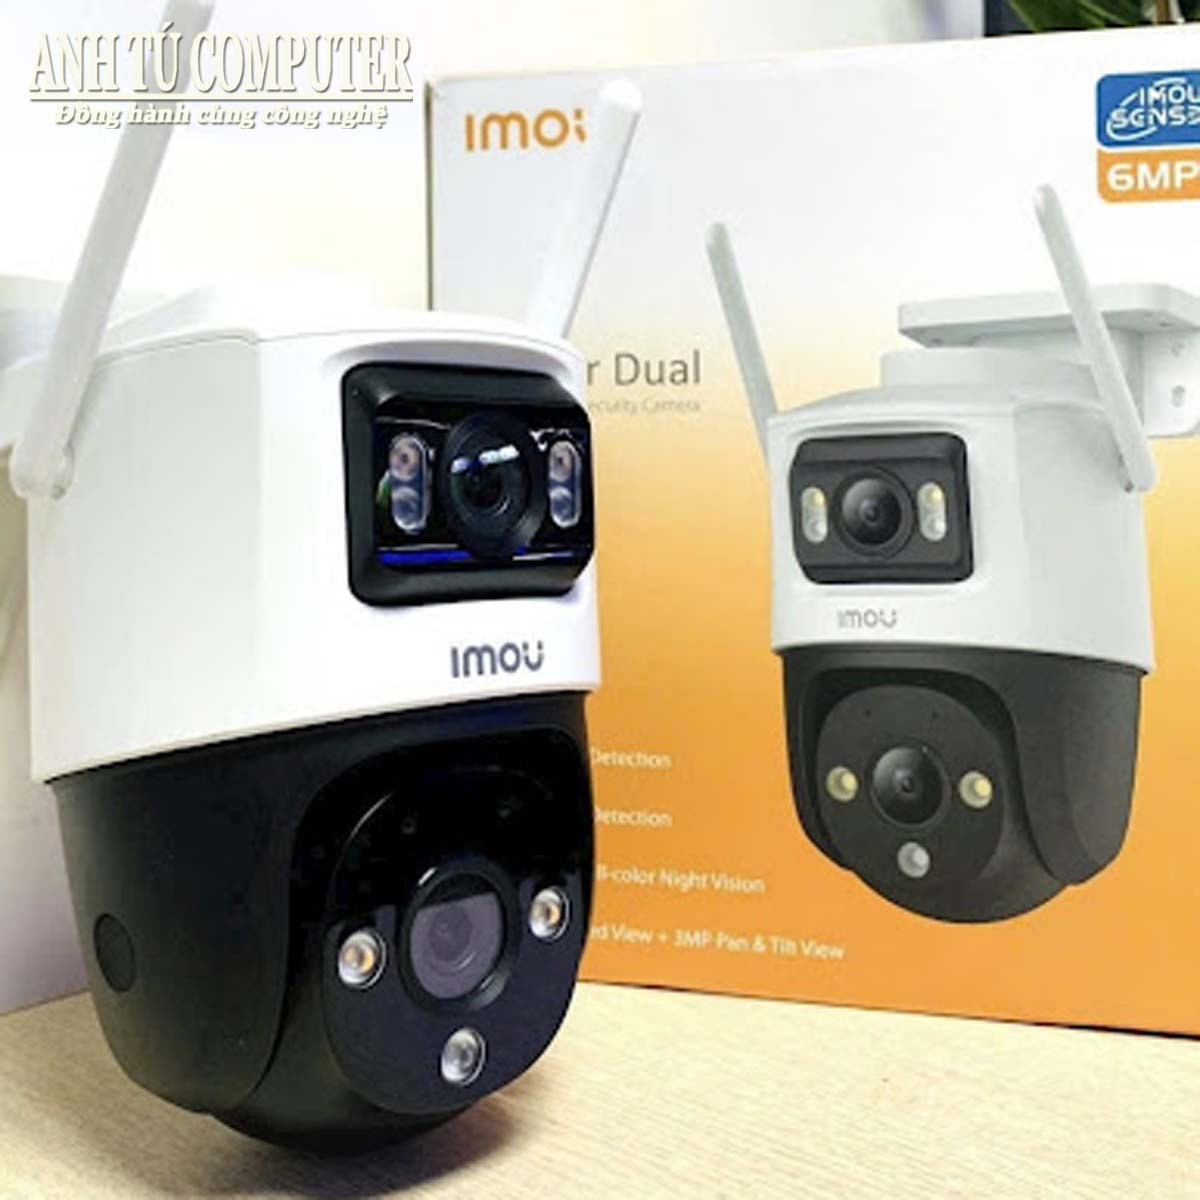 Camera Wifi 2 Mắt ngoài trời Imou Cruiser Dual 6MP IPC-S7XP-6M0WED hàng chính hãng